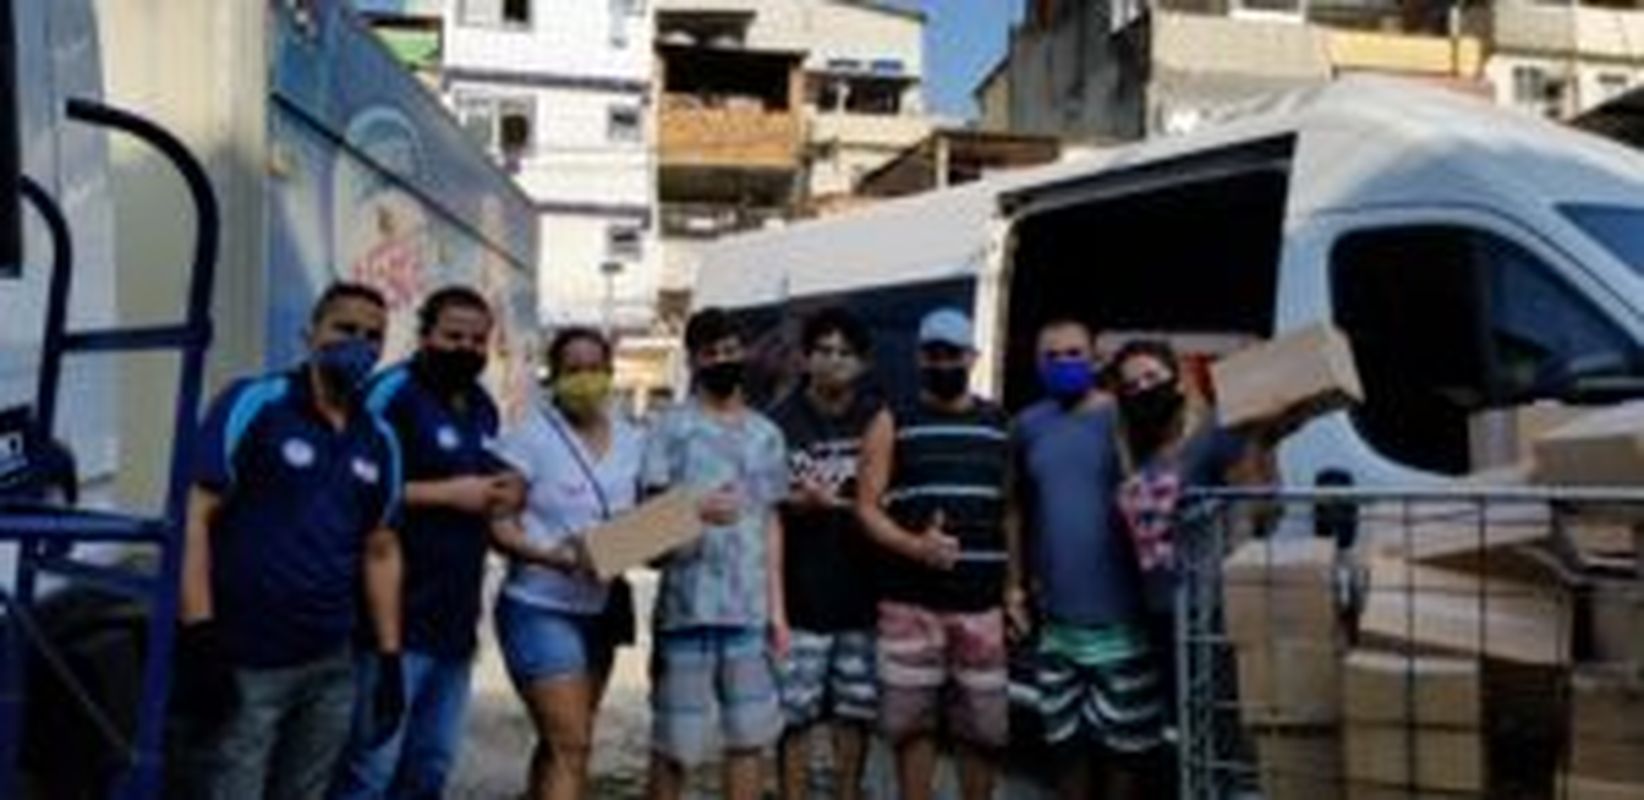 Corona Vírus: ONGs de Rio das Pedras se unem em doação de sorvetes